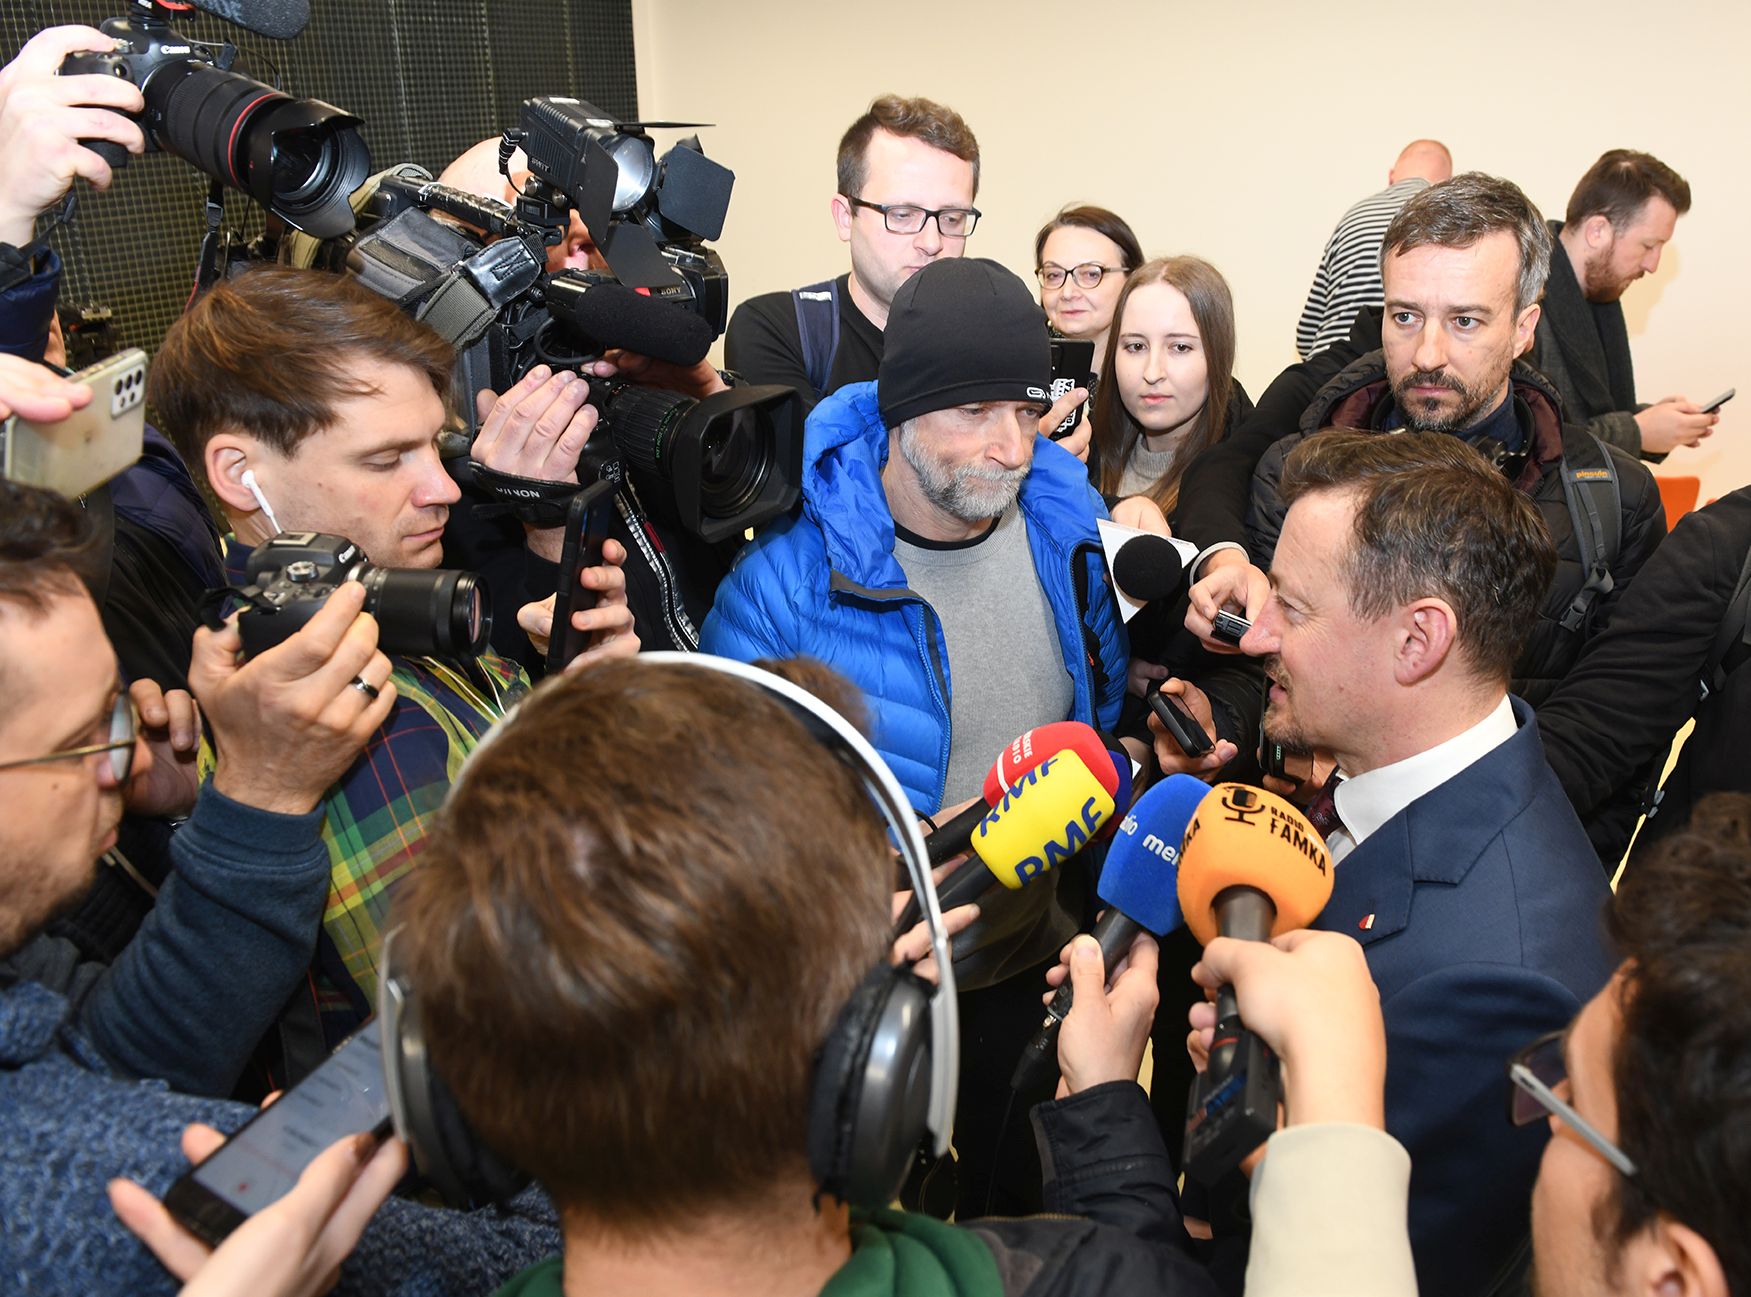 Konferencja prasowa z udziałem Adama Małysza. Wokół prezesa tłum dziennikarzy z mikrofonami